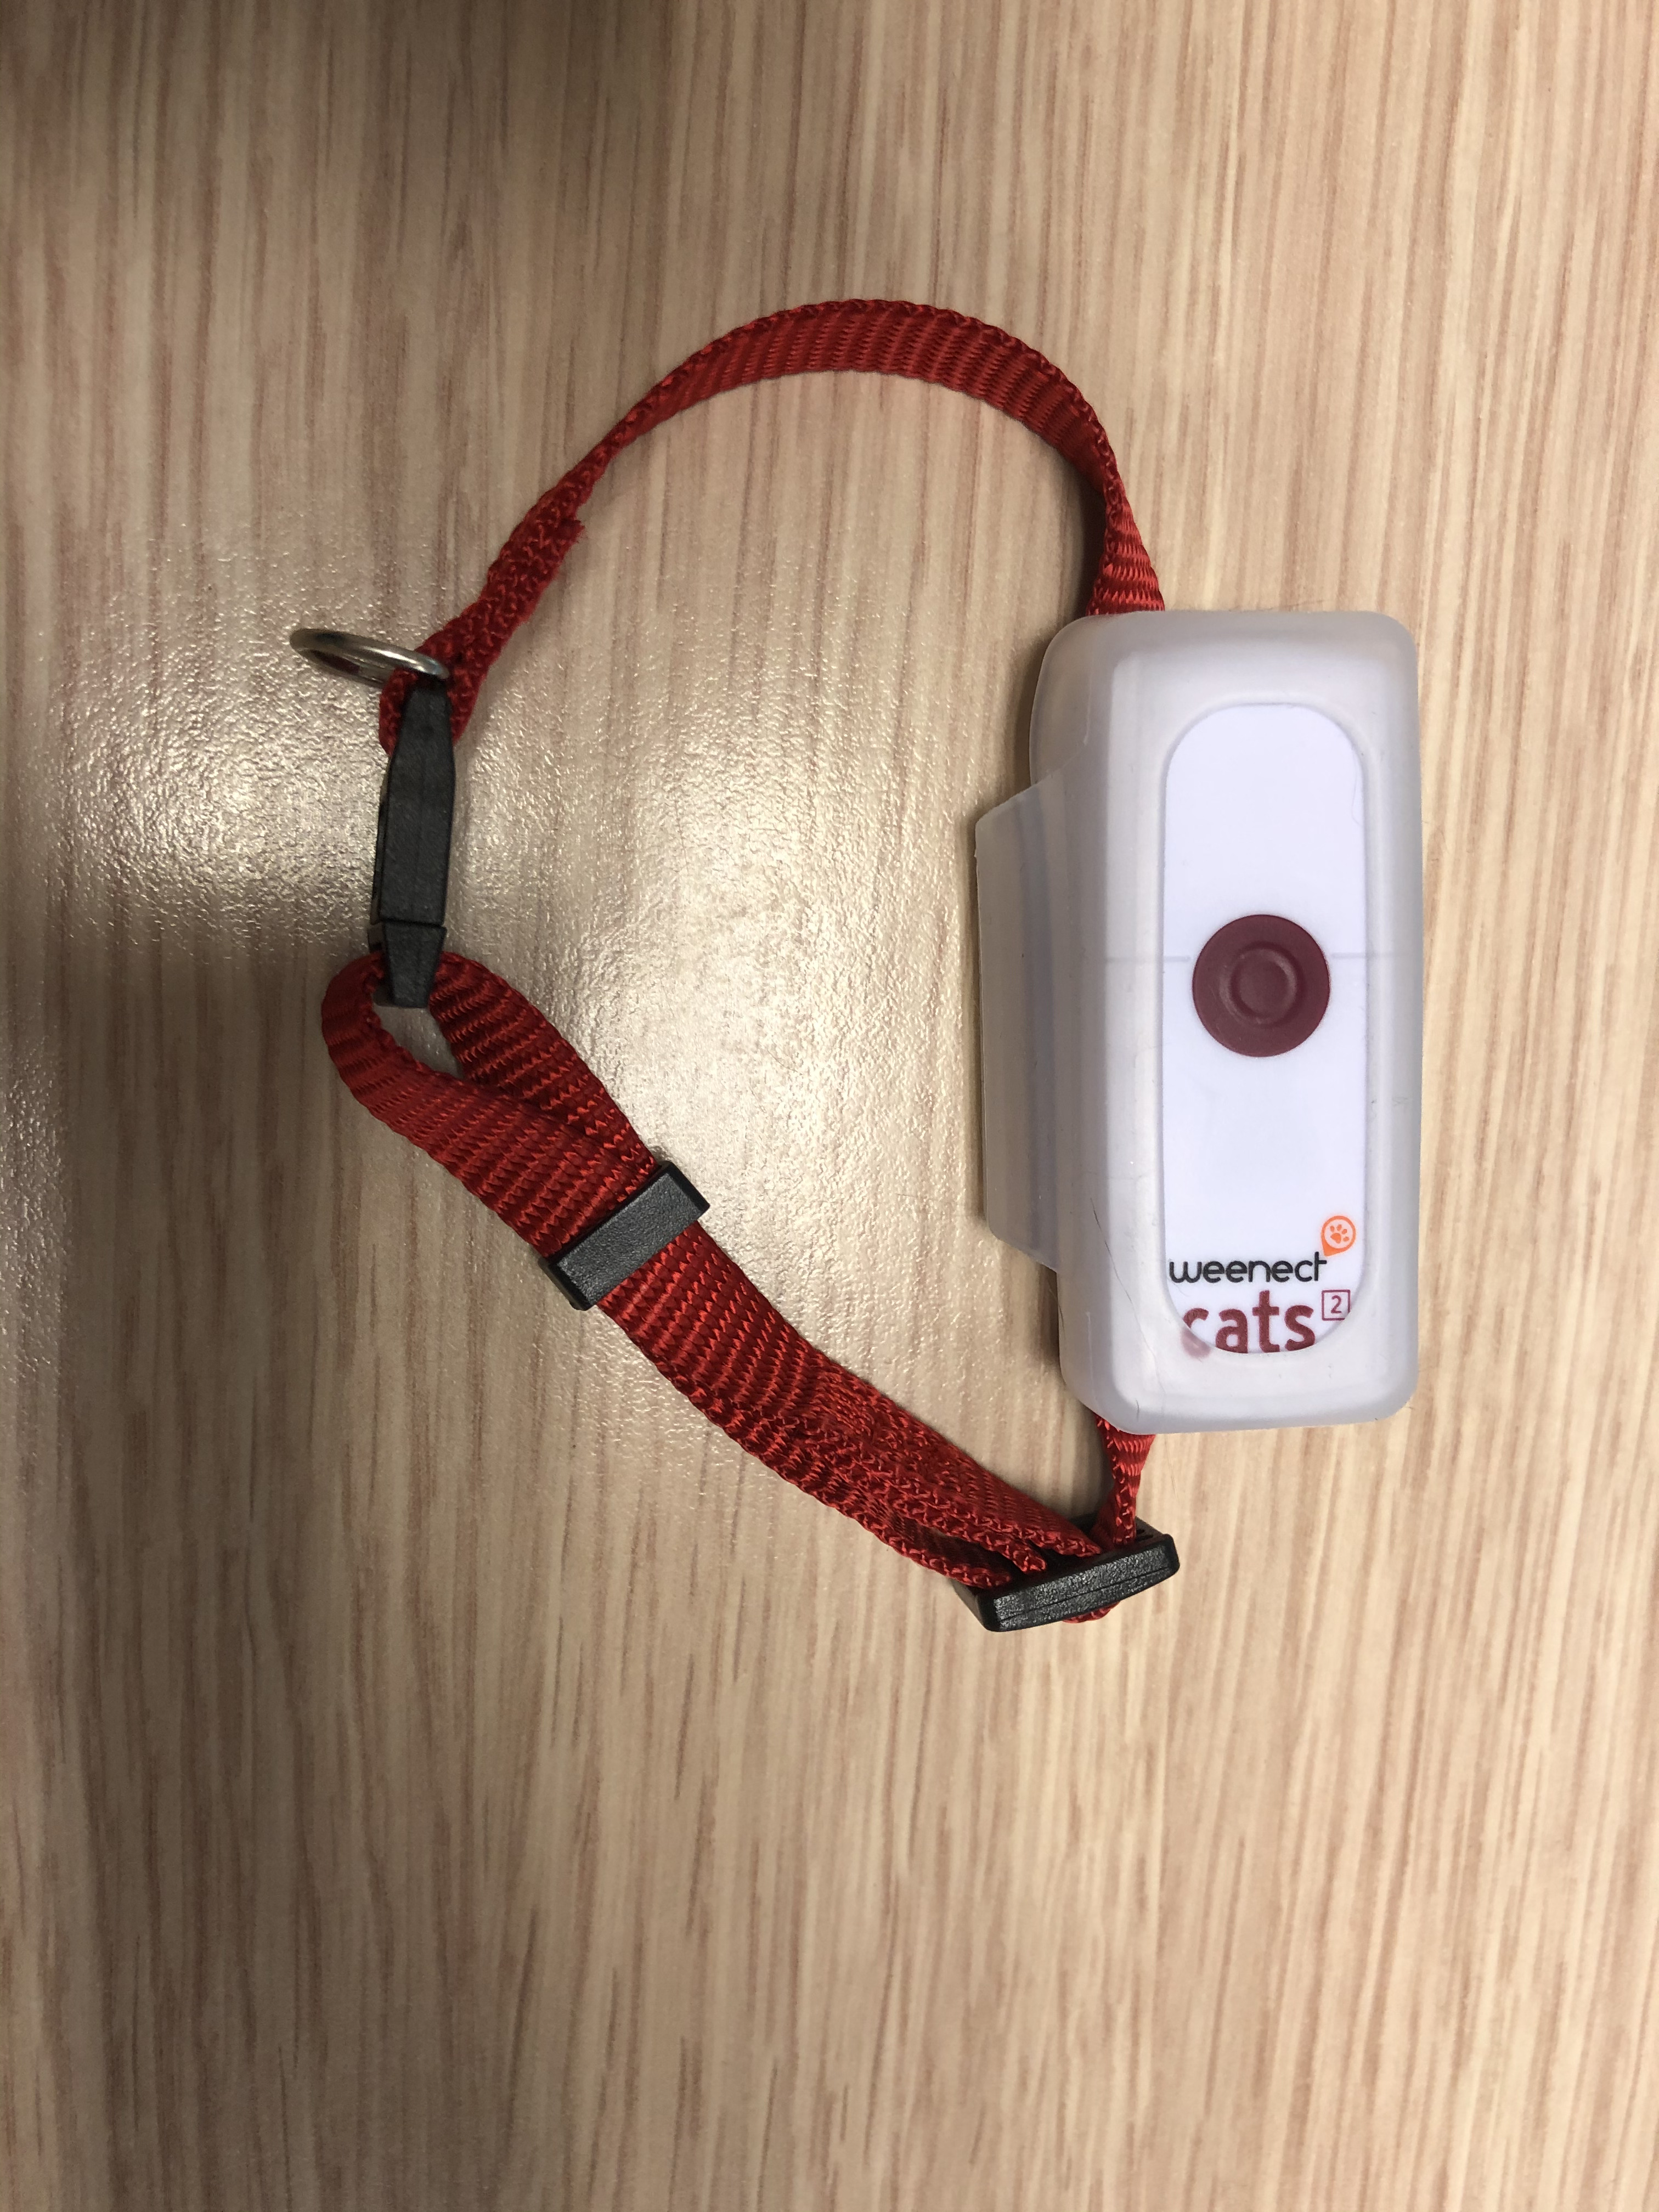 Collier GPS pour chat Weenect Cats 2 : Woopets a testé pour vous !